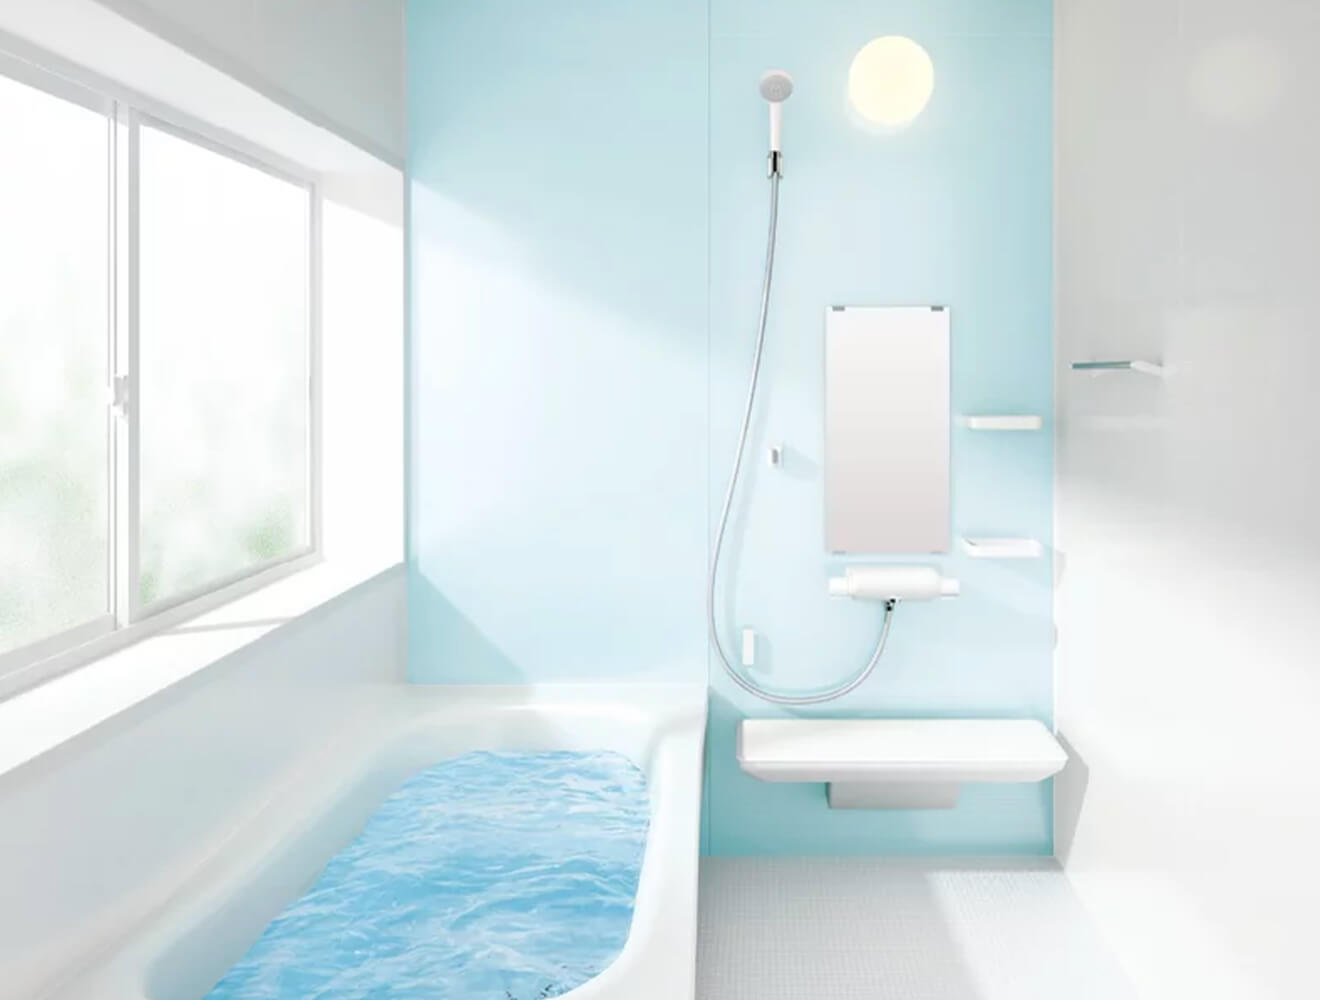 鹿児島リフォーム・激安価格ユニットバス・風呂浴室交換・サザナ・1616サイズ・Nタイプ01